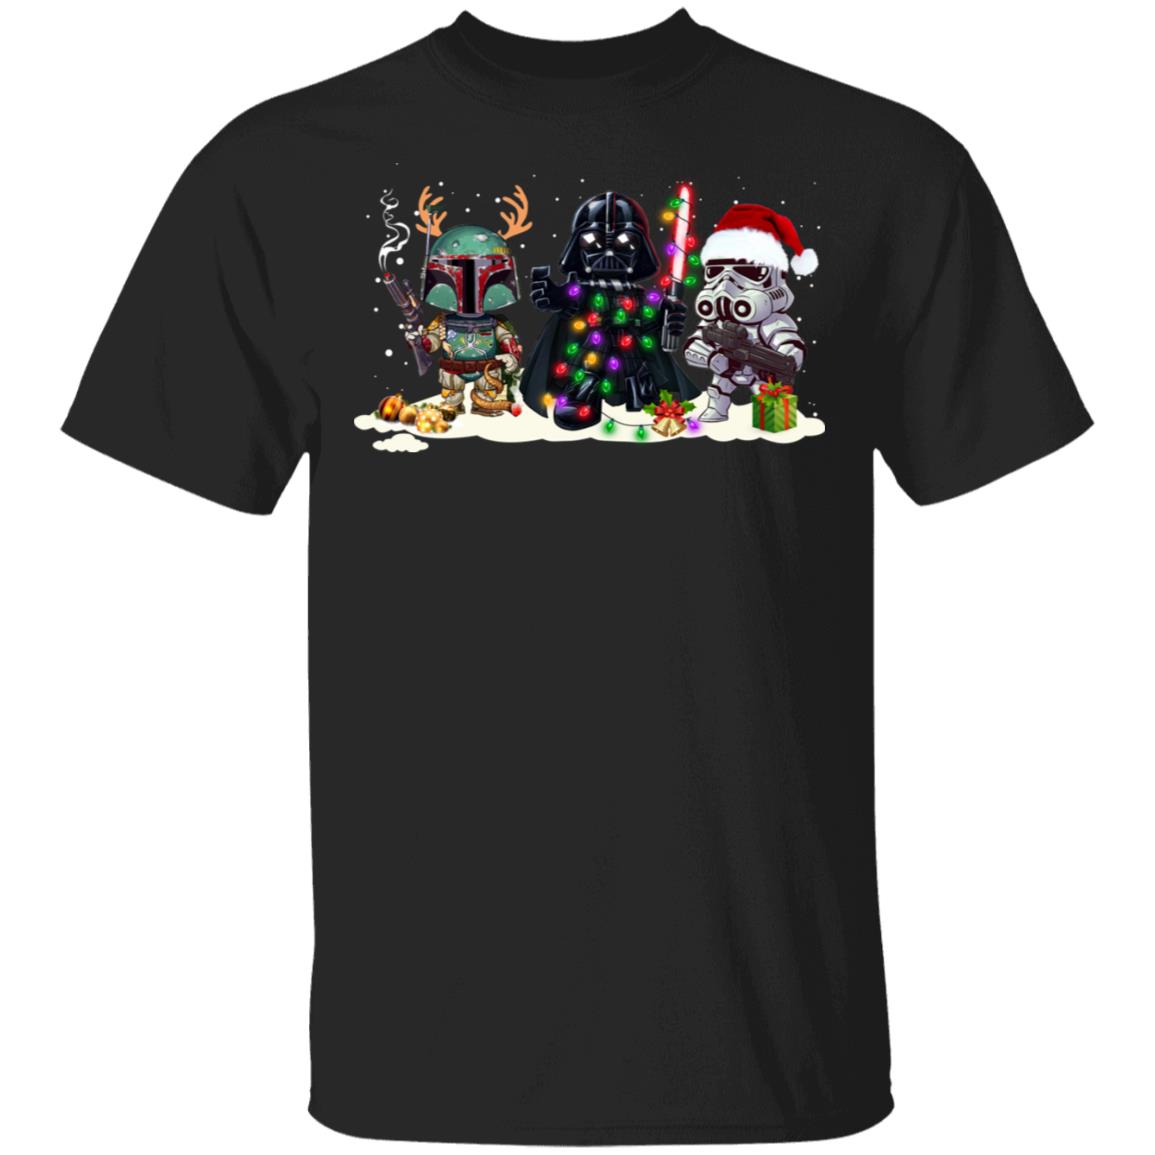 Star Wars Boba Fett Darth Vader Stormtrooper Christmas